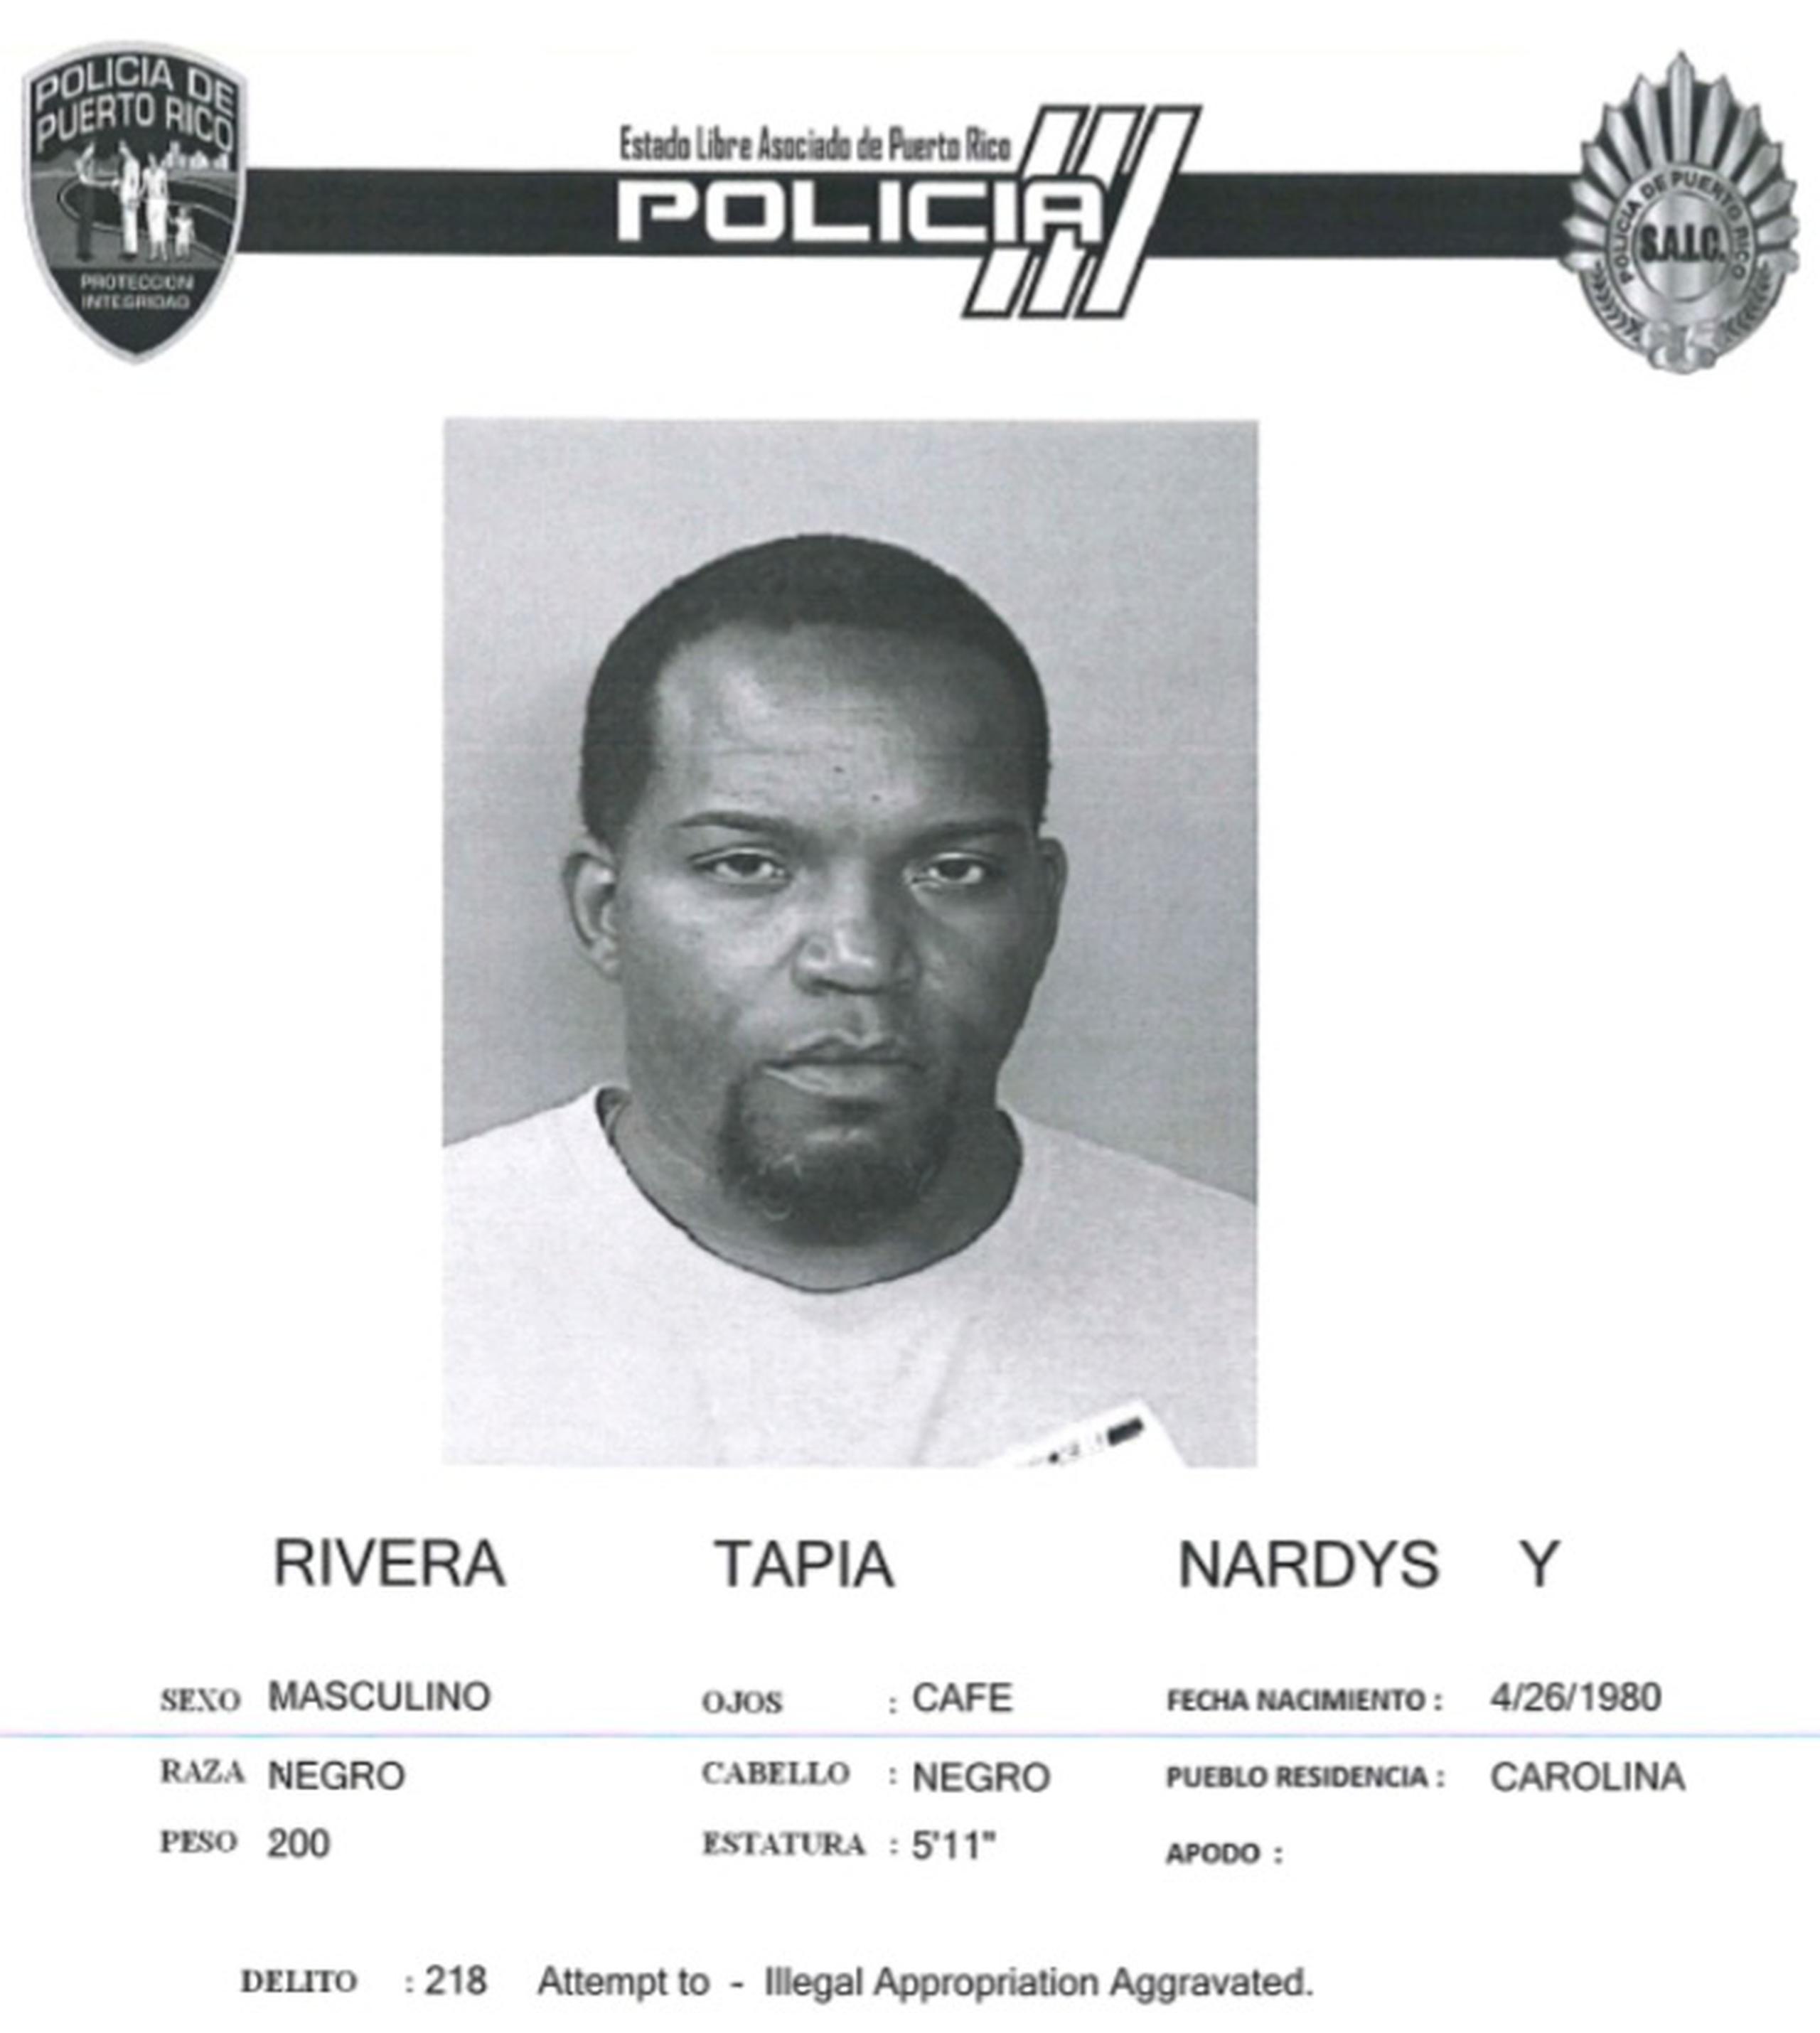 Nardys Y. Rivera Tapia, de 40 años, fue acusado por fraude al programa federal de Asistencia por Desempleo Pandémico (PUA, en inglés).